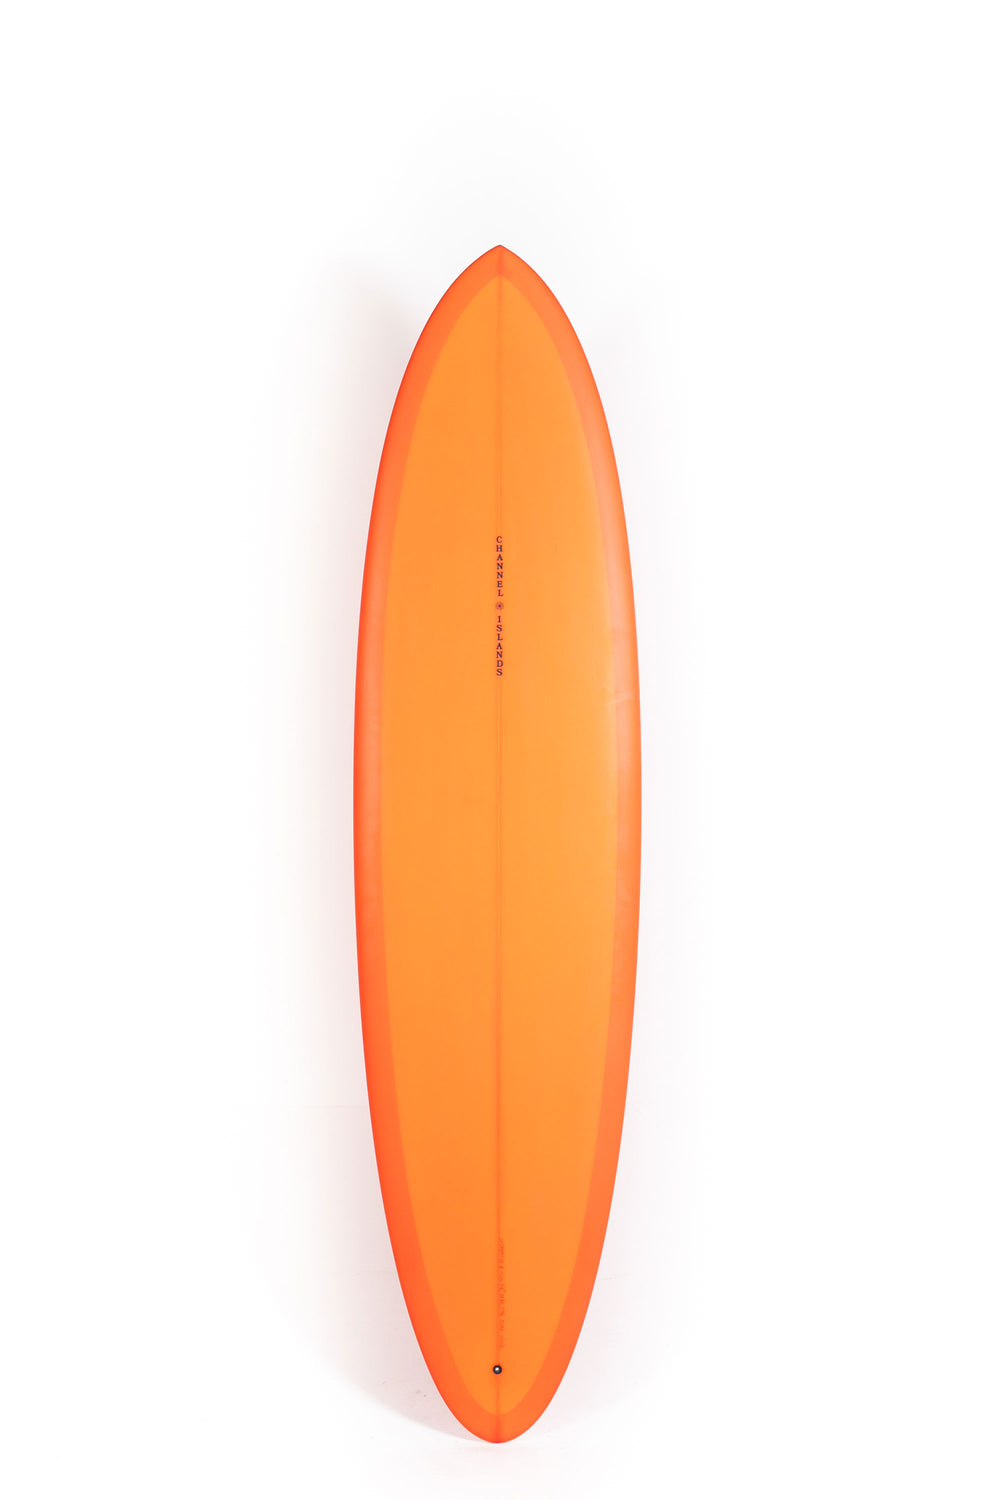 Pukas Surf Shop - Channel Islands - CI MID - 7'6